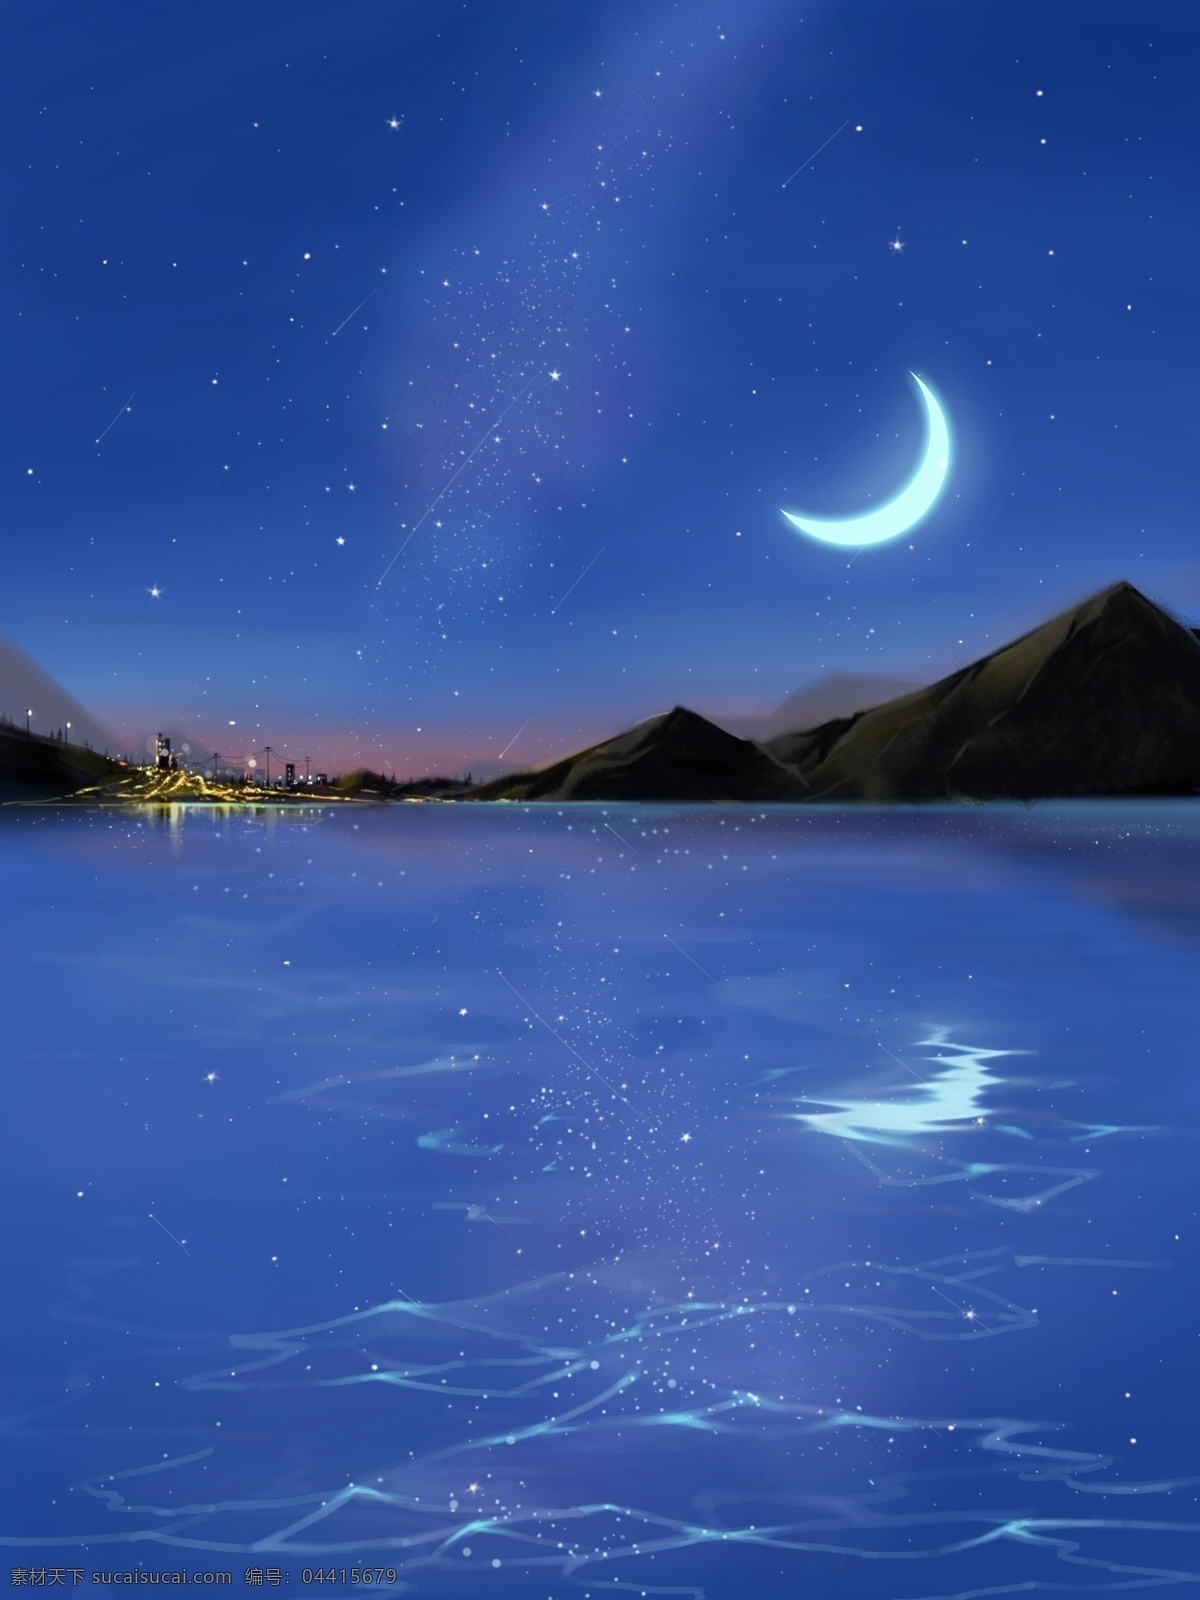 海边 灯光 星空 夜景 原创 插画 月亮 城市 海面 山 水 倒影 流星